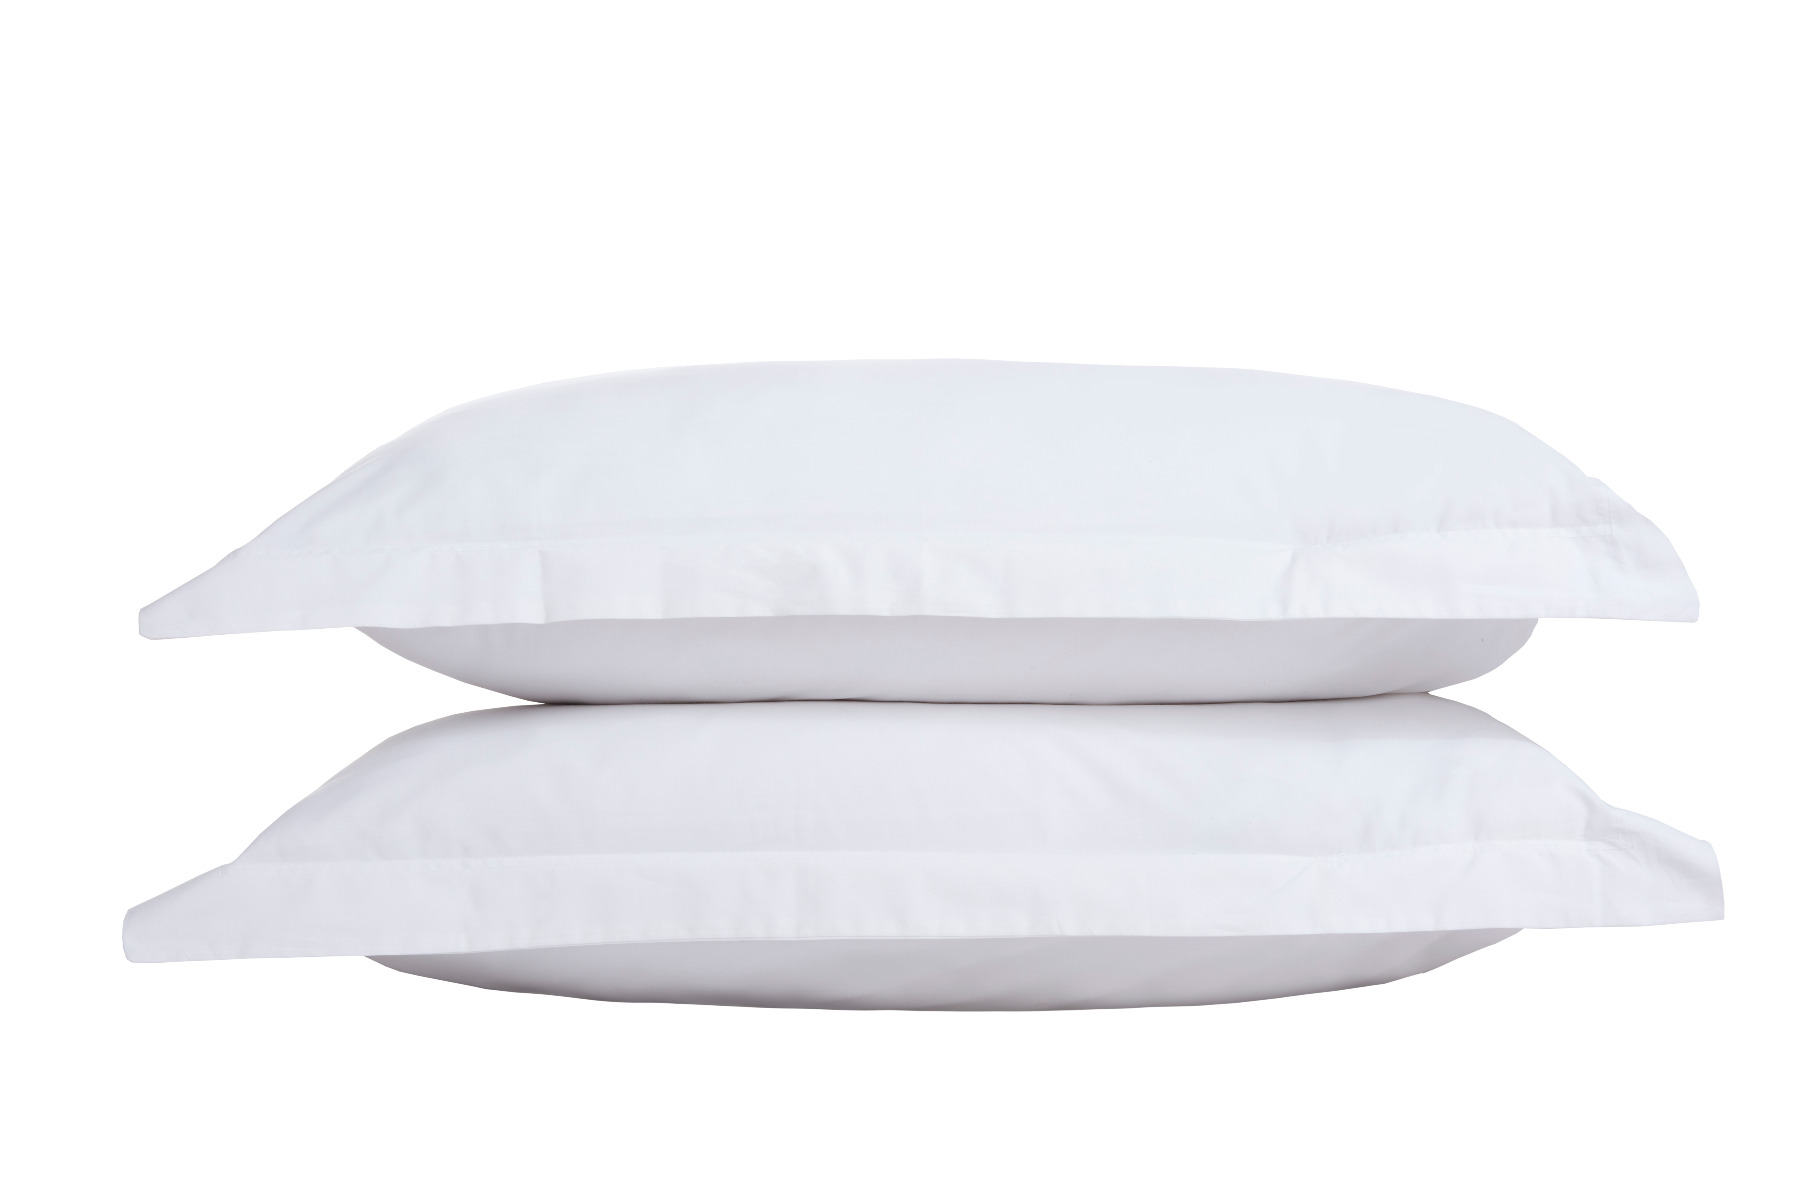 Oxford Pillowcase White